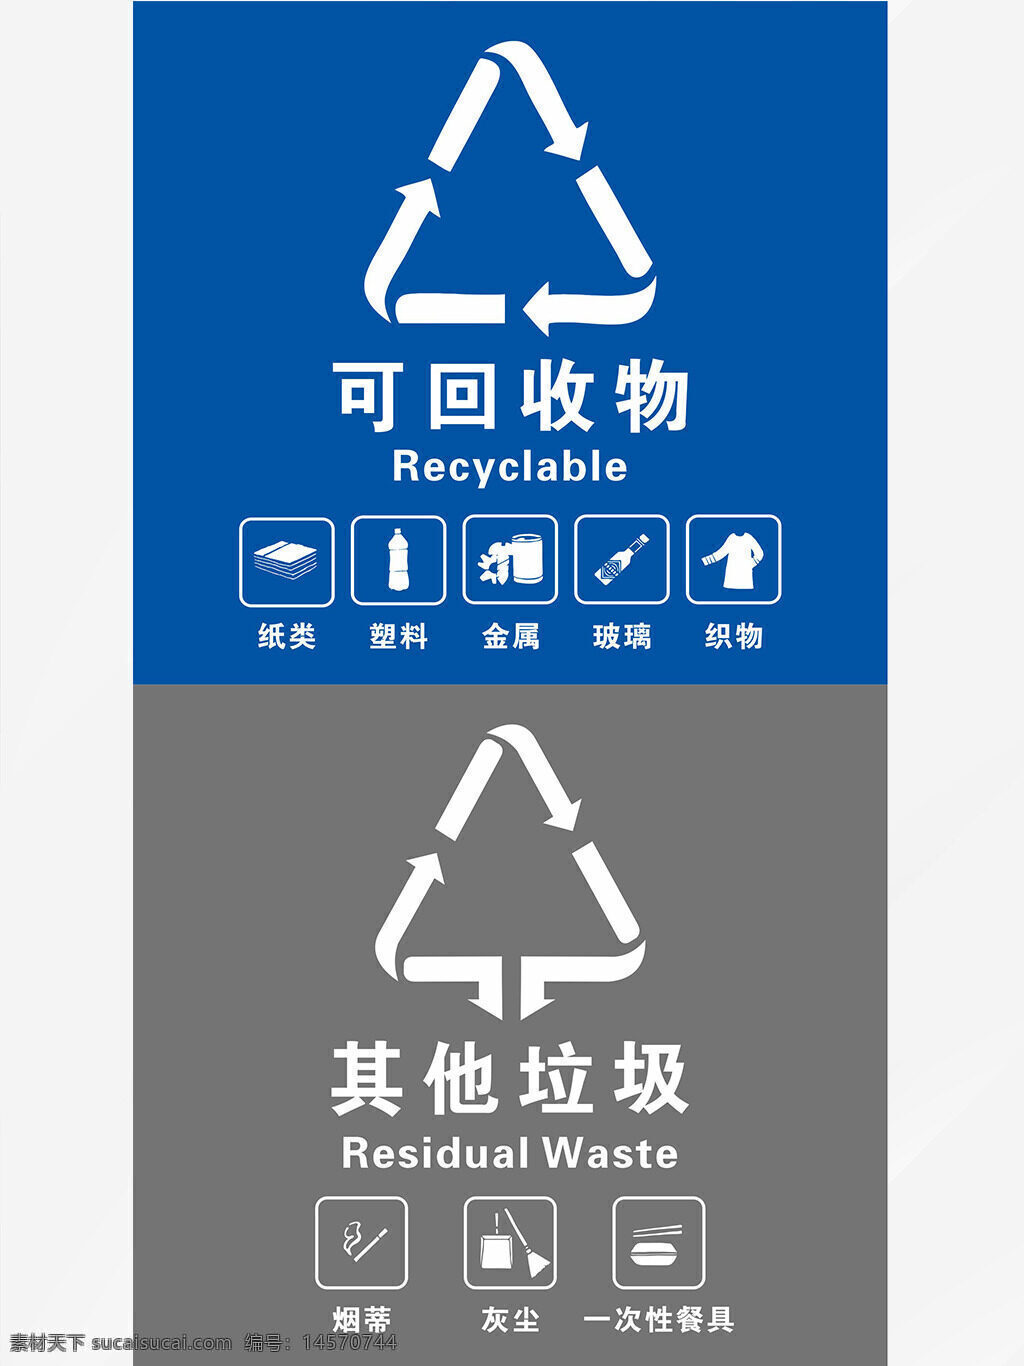 垃圾分类 其他垃圾 可回收垃圾 垃圾分类标识 垃圾分类小品 常用垃圾分类 分类垃圾 垃圾分类海报